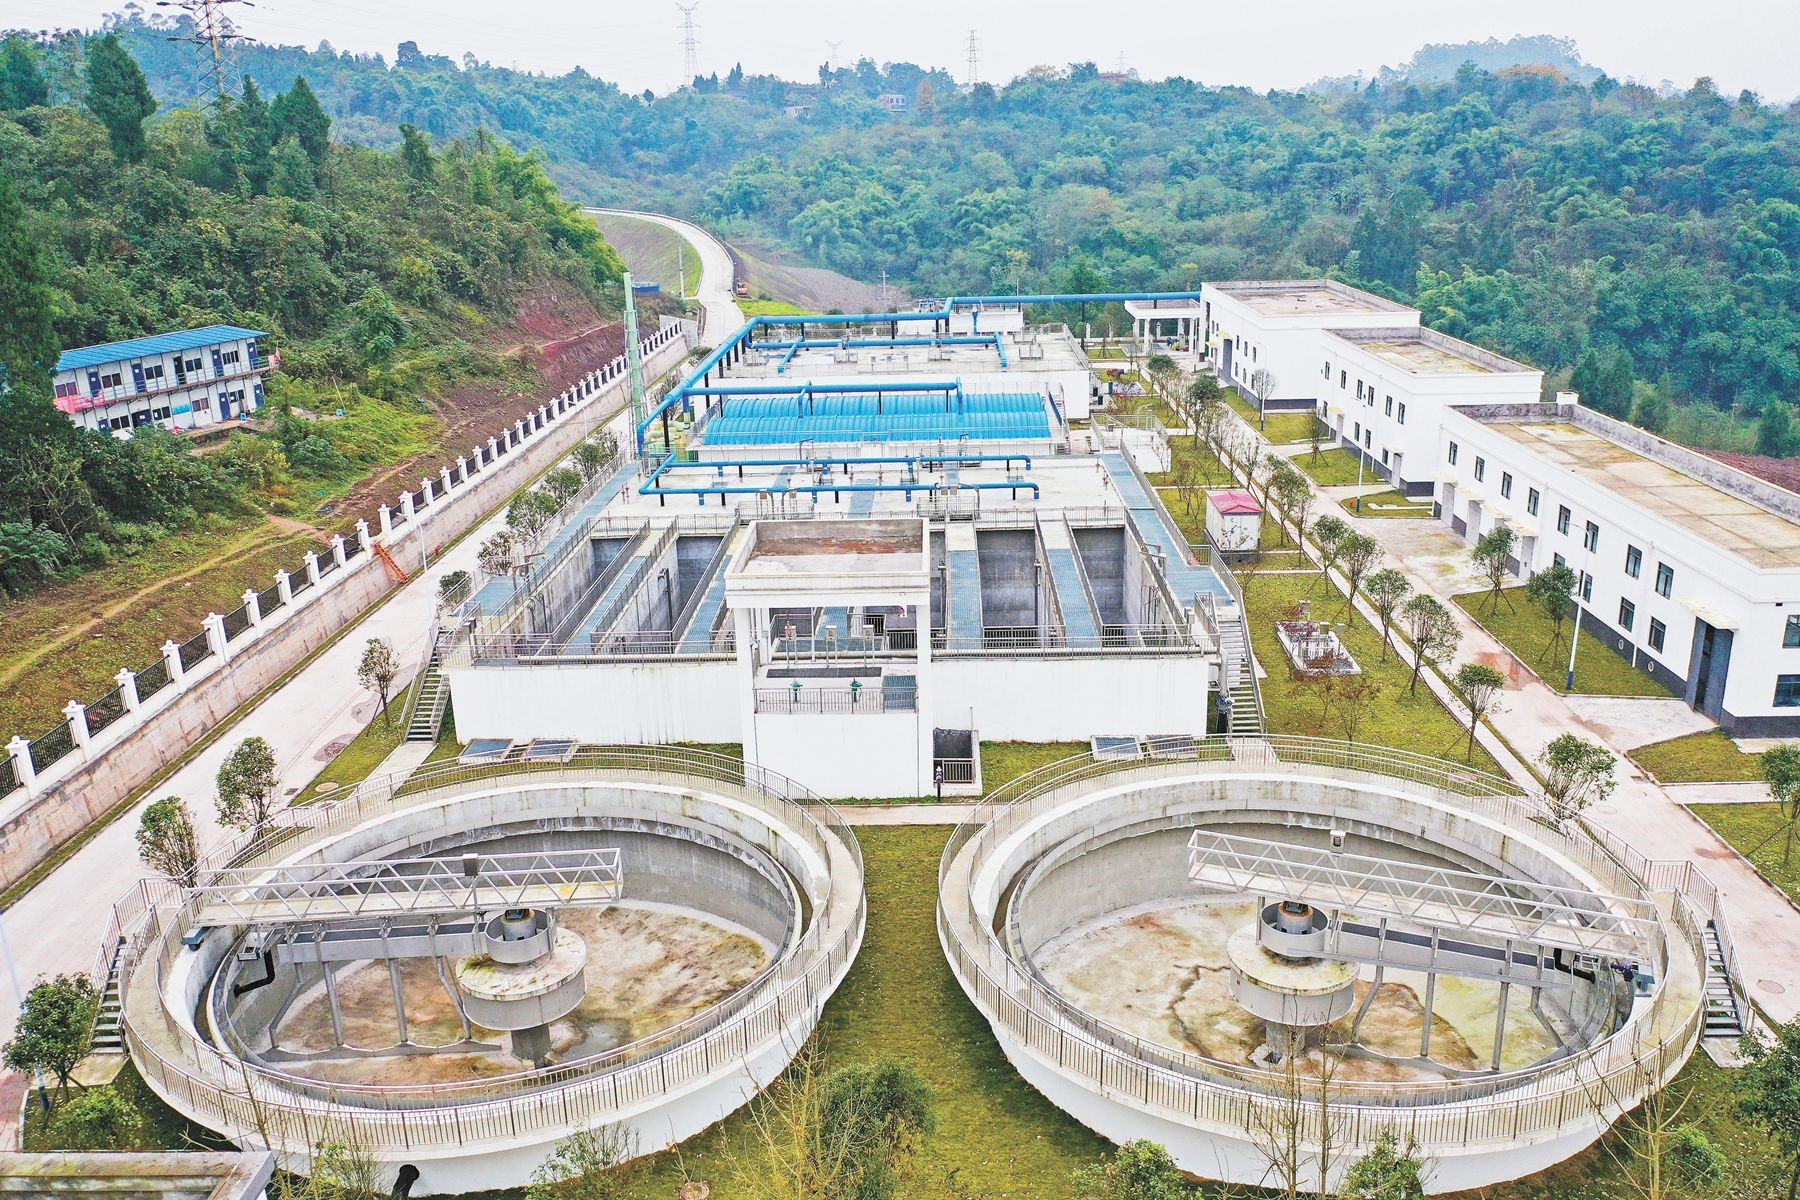 Planta de tratamiento de aguas residuales del parque industrial urbano de Lingang Descarga de aguas residuales en línea Sensores de calidad del agua Análisis de monitoreo